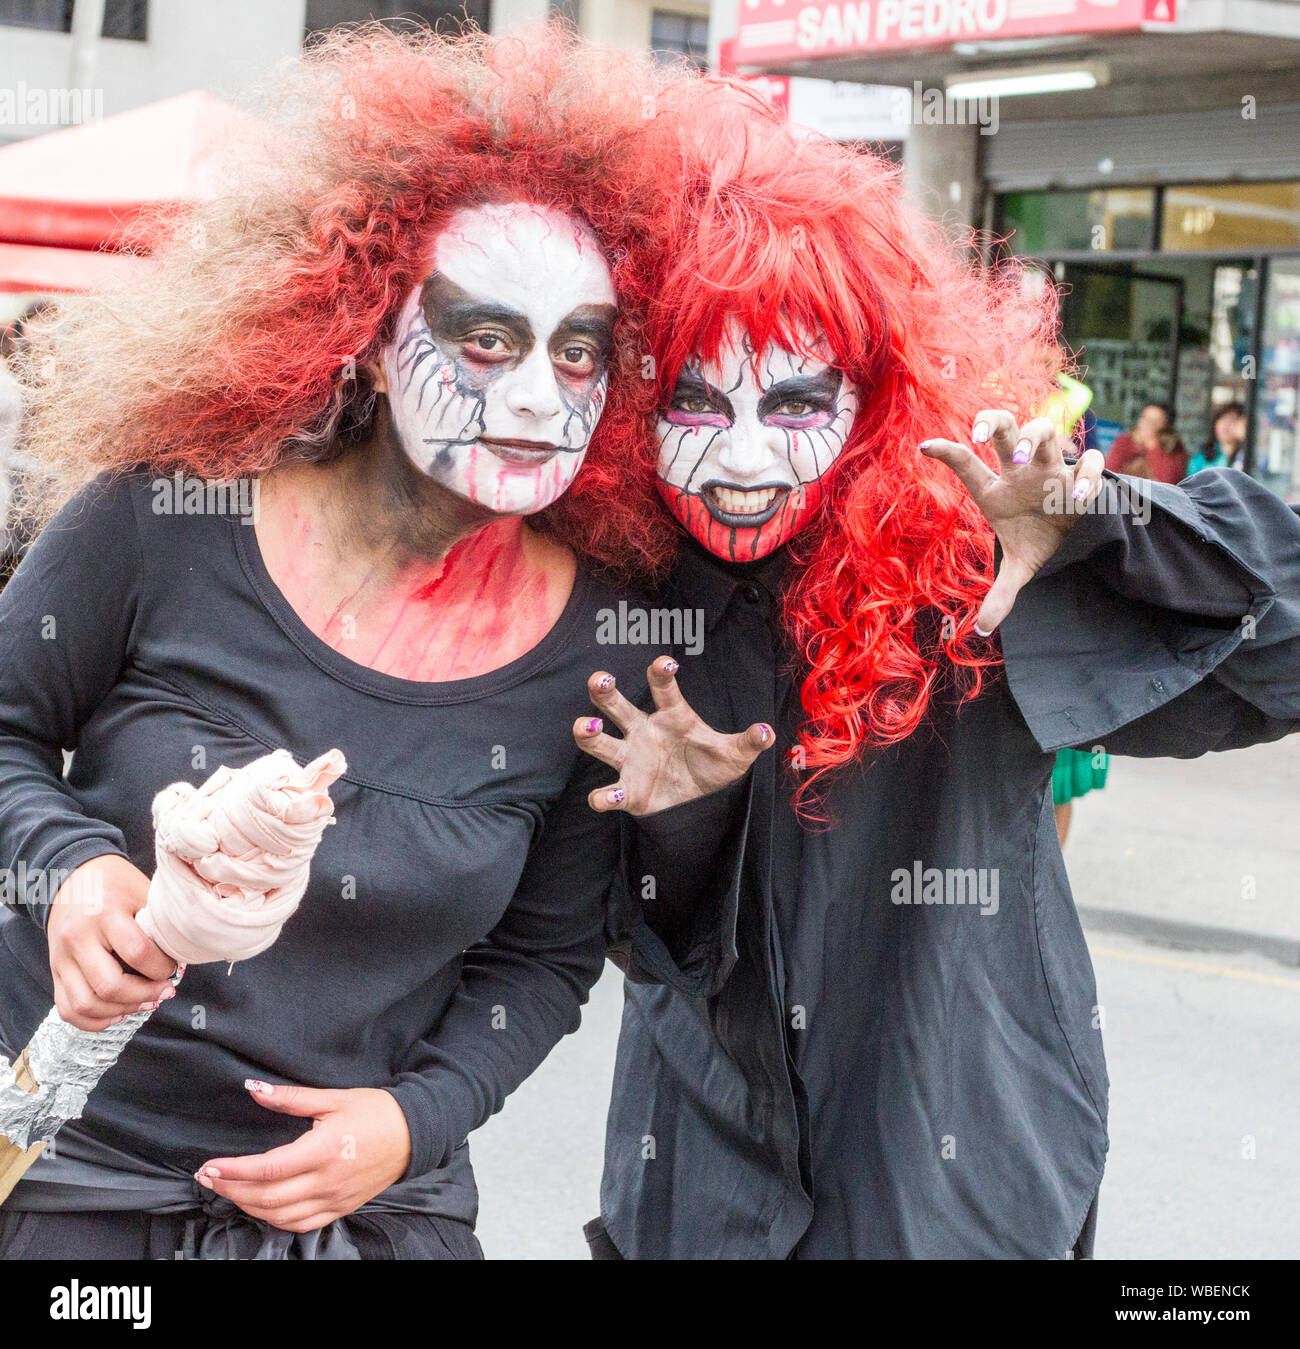 Cuenca, Ecuador - Jan 5, 2014: Due ragazze sono vestiti come demoni per la parata Foto Stock